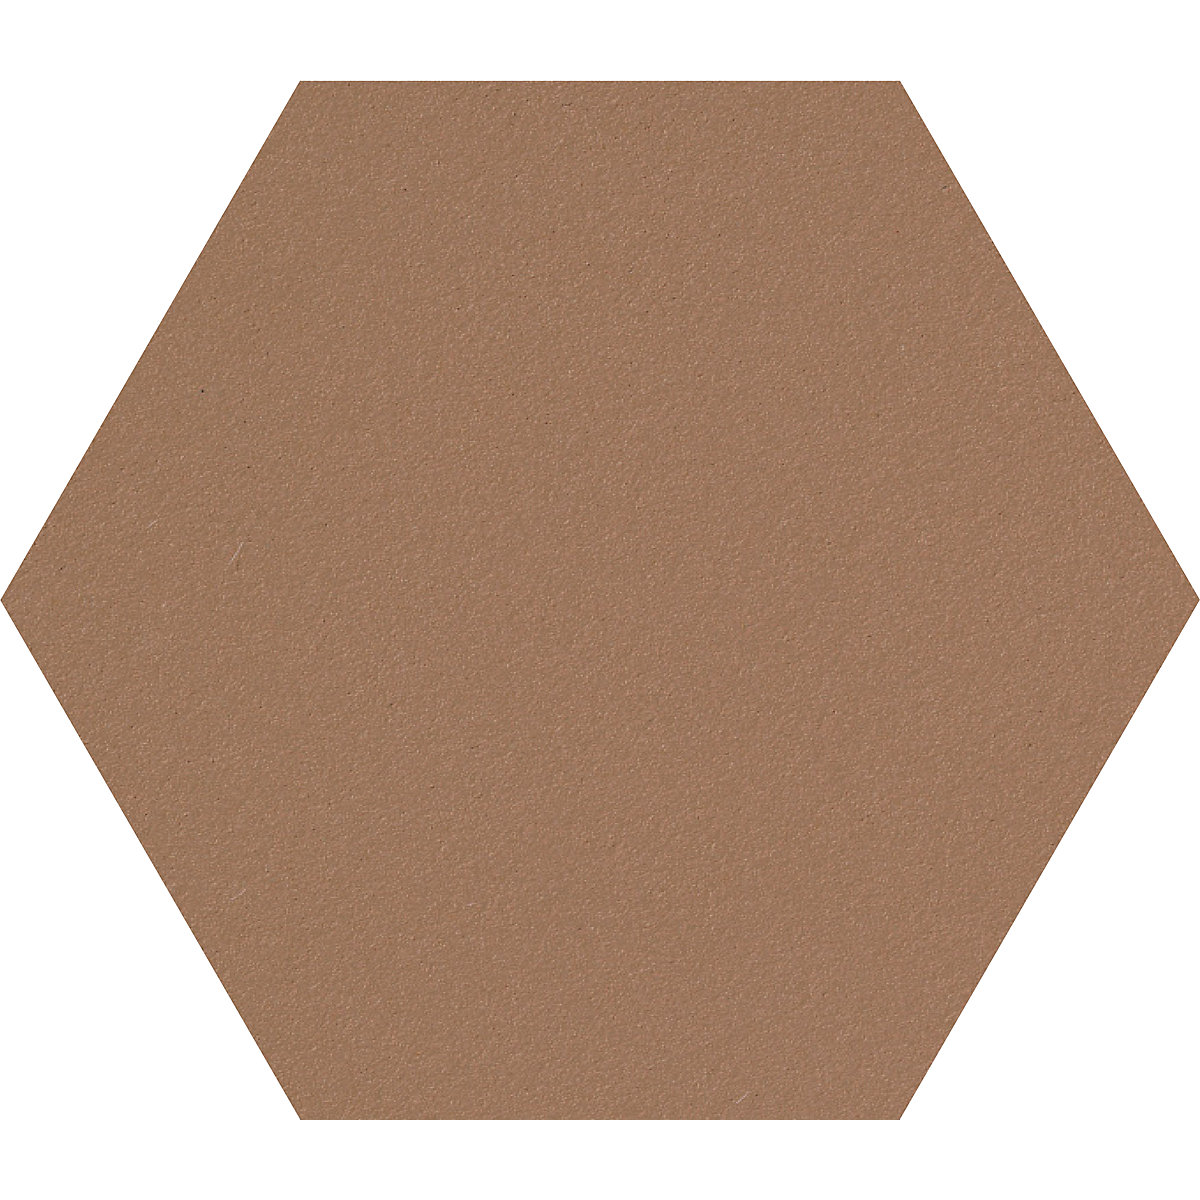 Hexagonal designer pin board – Chameleon, cork, WxH 600 x 600 mm, light brown-31